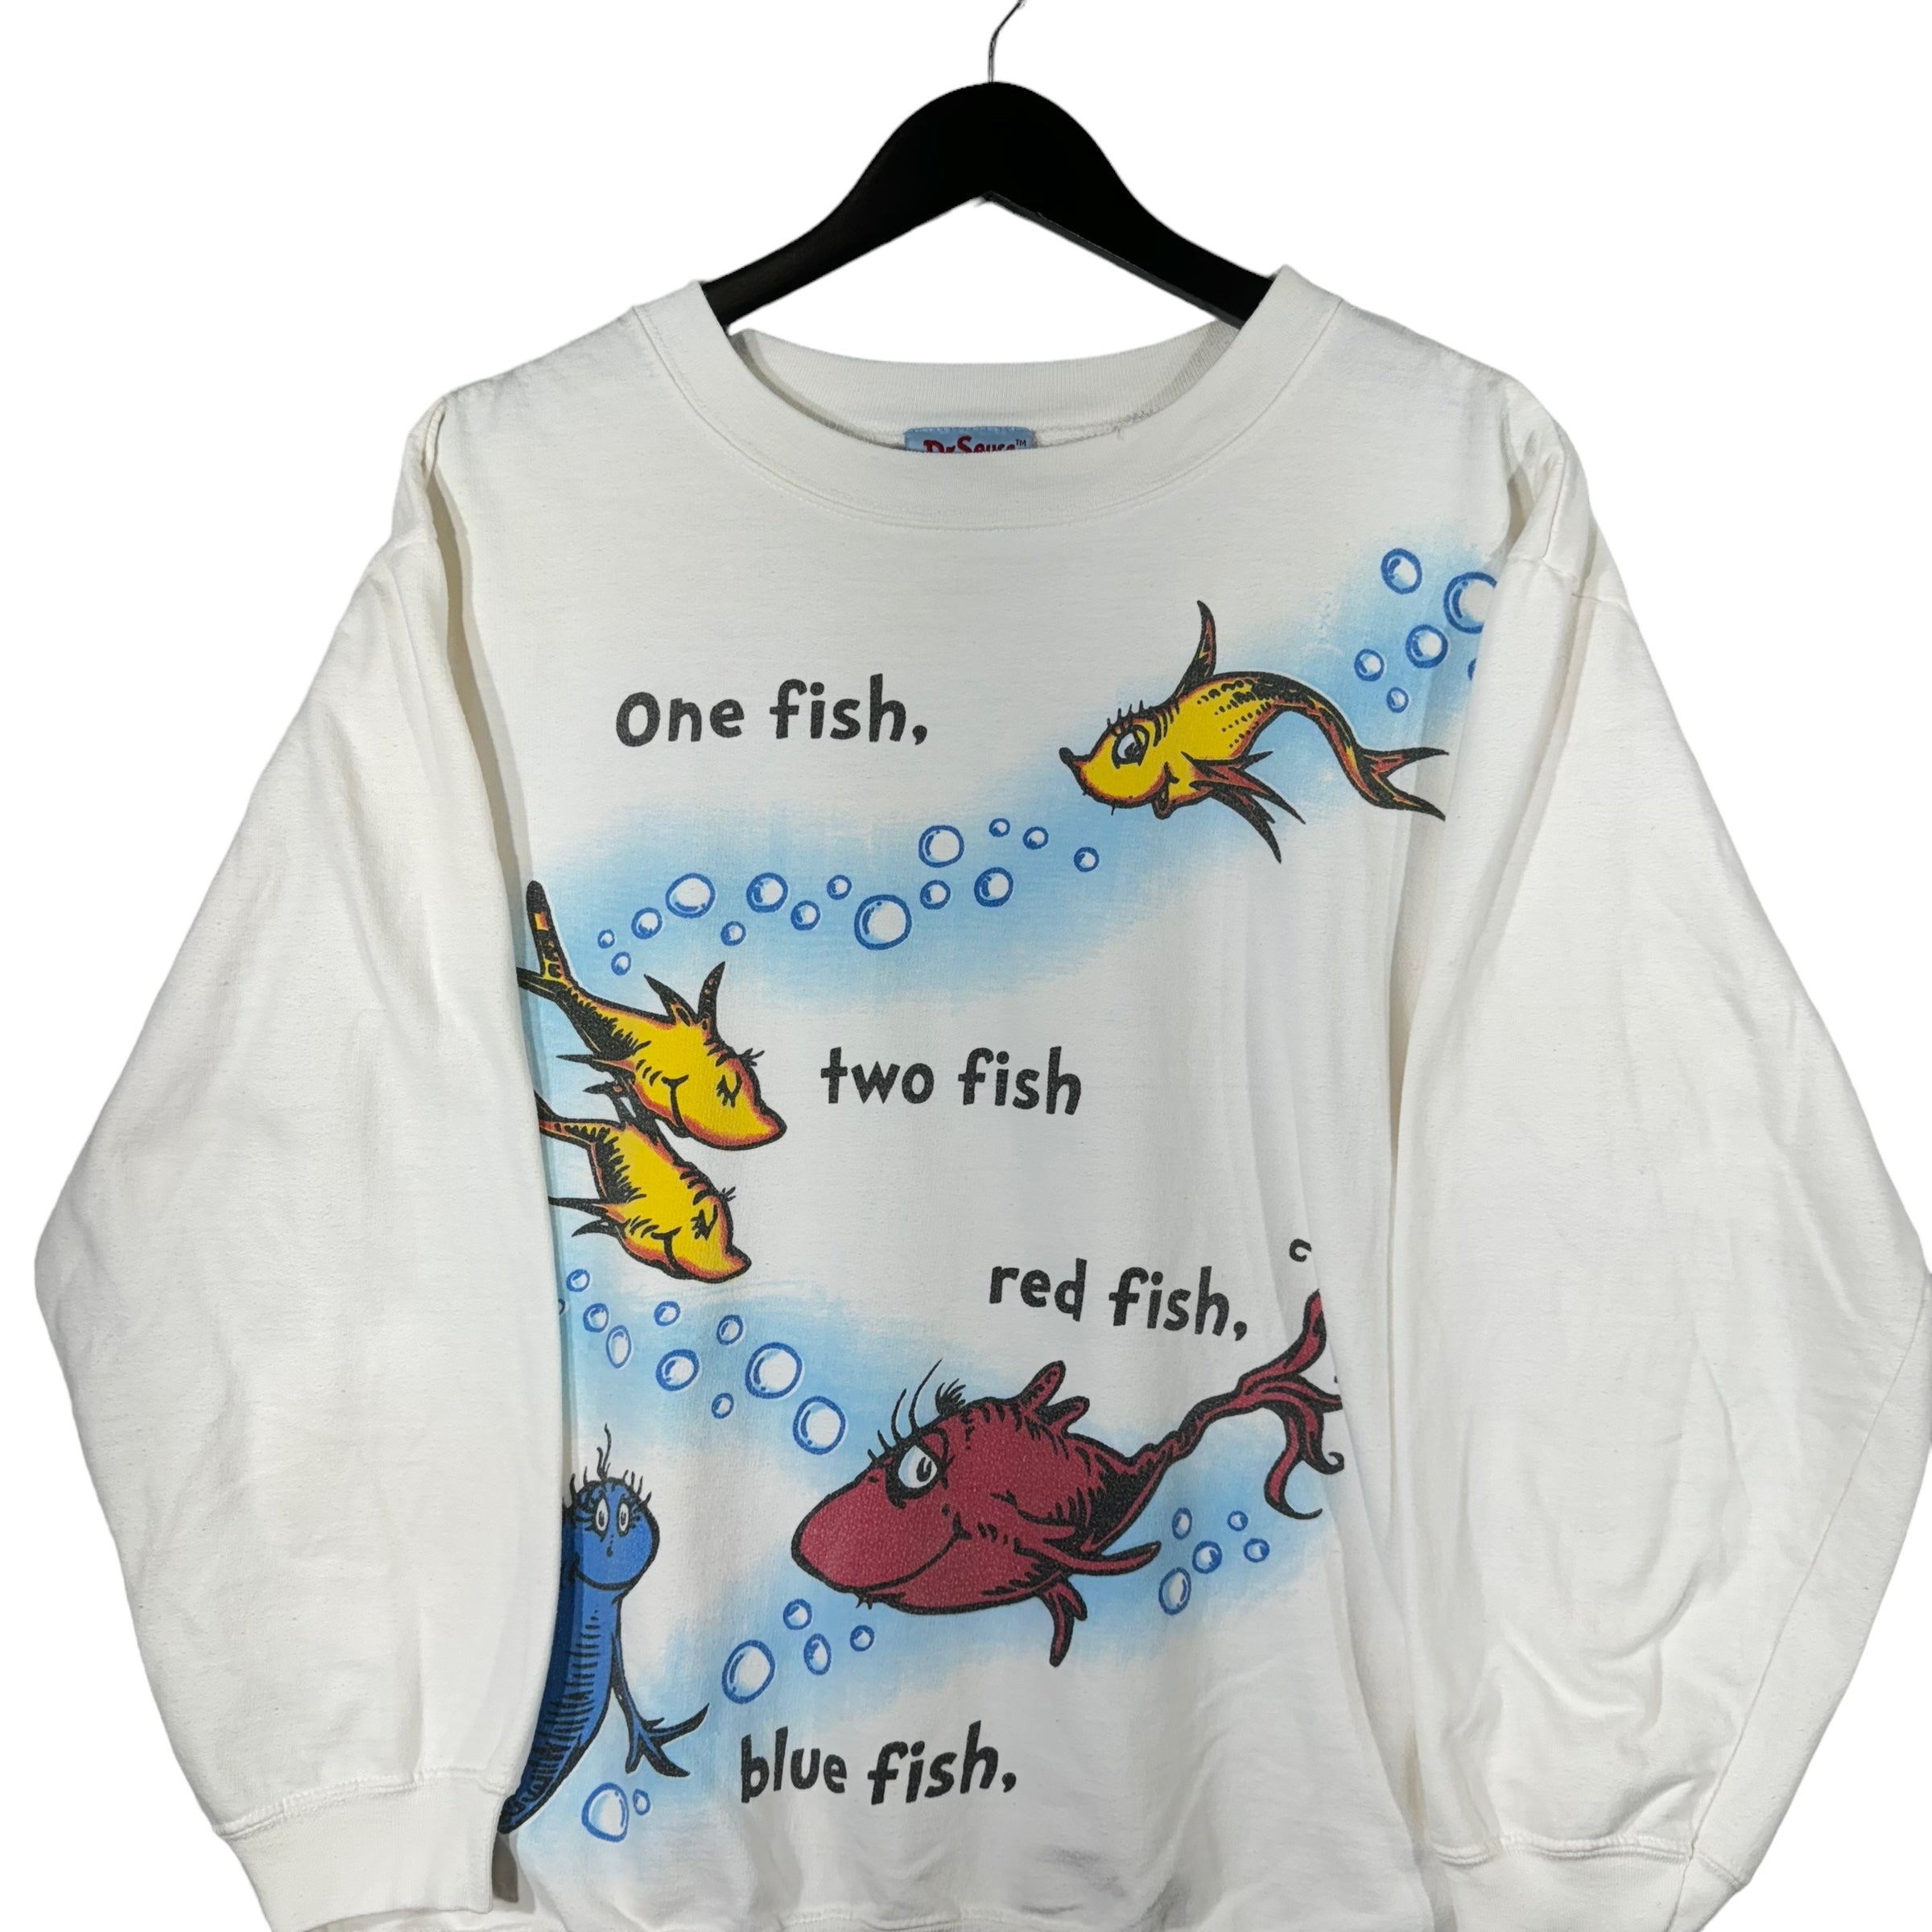 Vintage Dr Seuss "One Fish, Two Fish" Crewneck